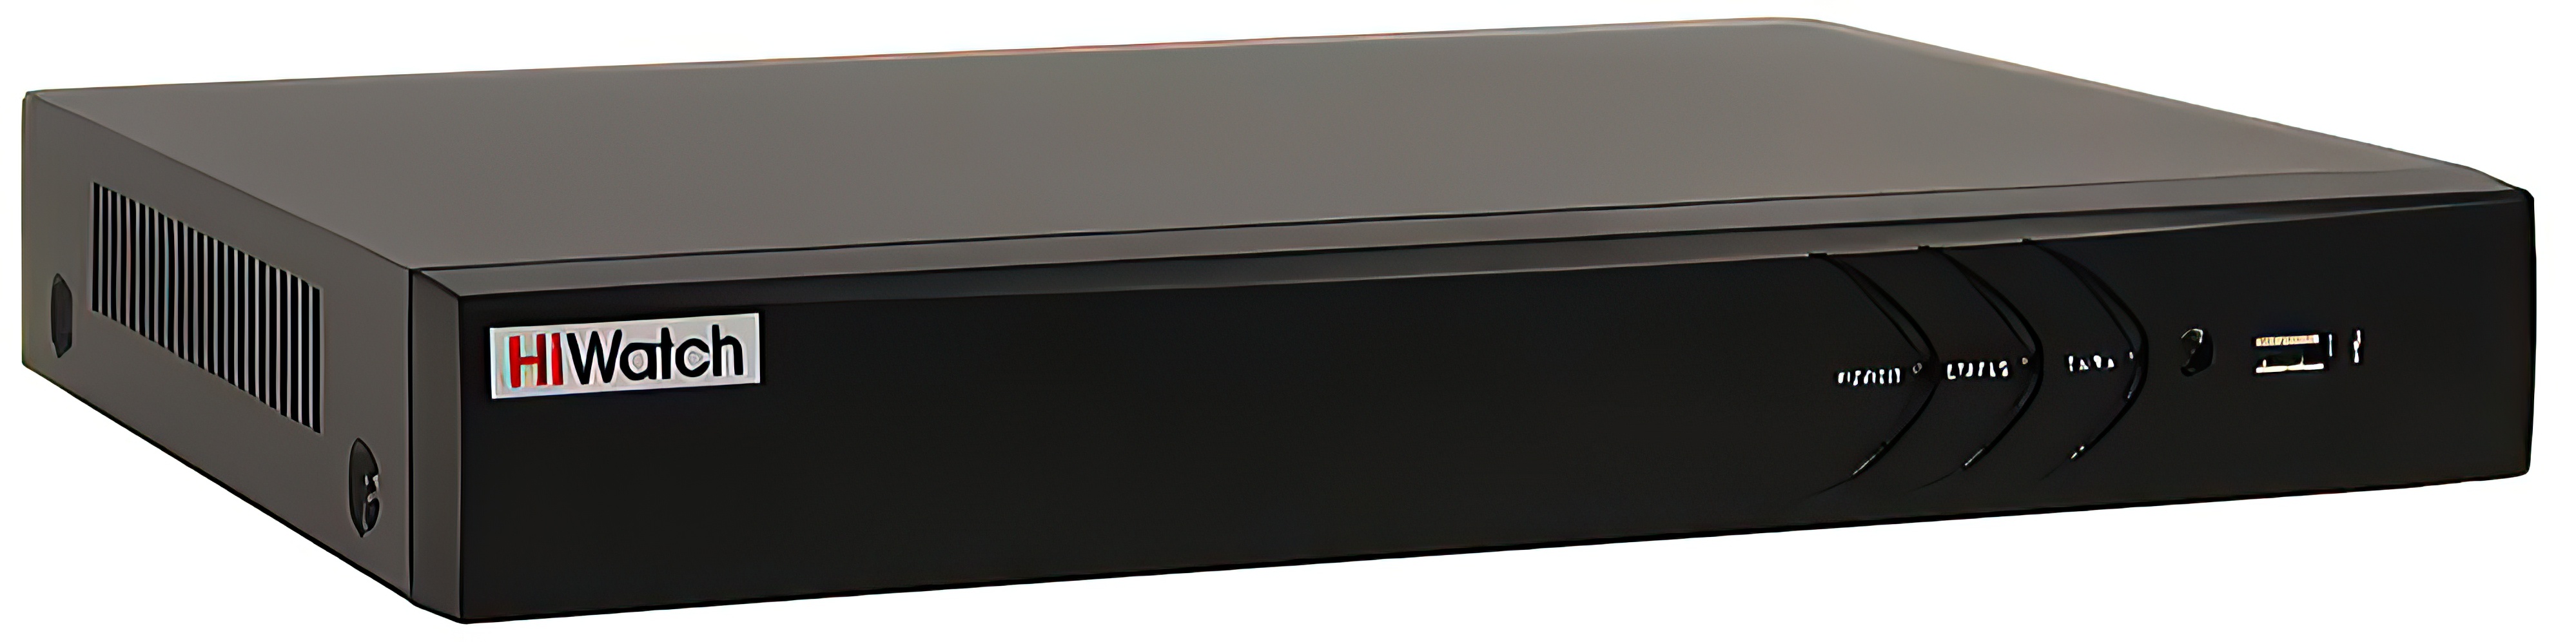 8-канальный гибридный HD-TVI видеорегистратор HiWatch DS-H308QAС